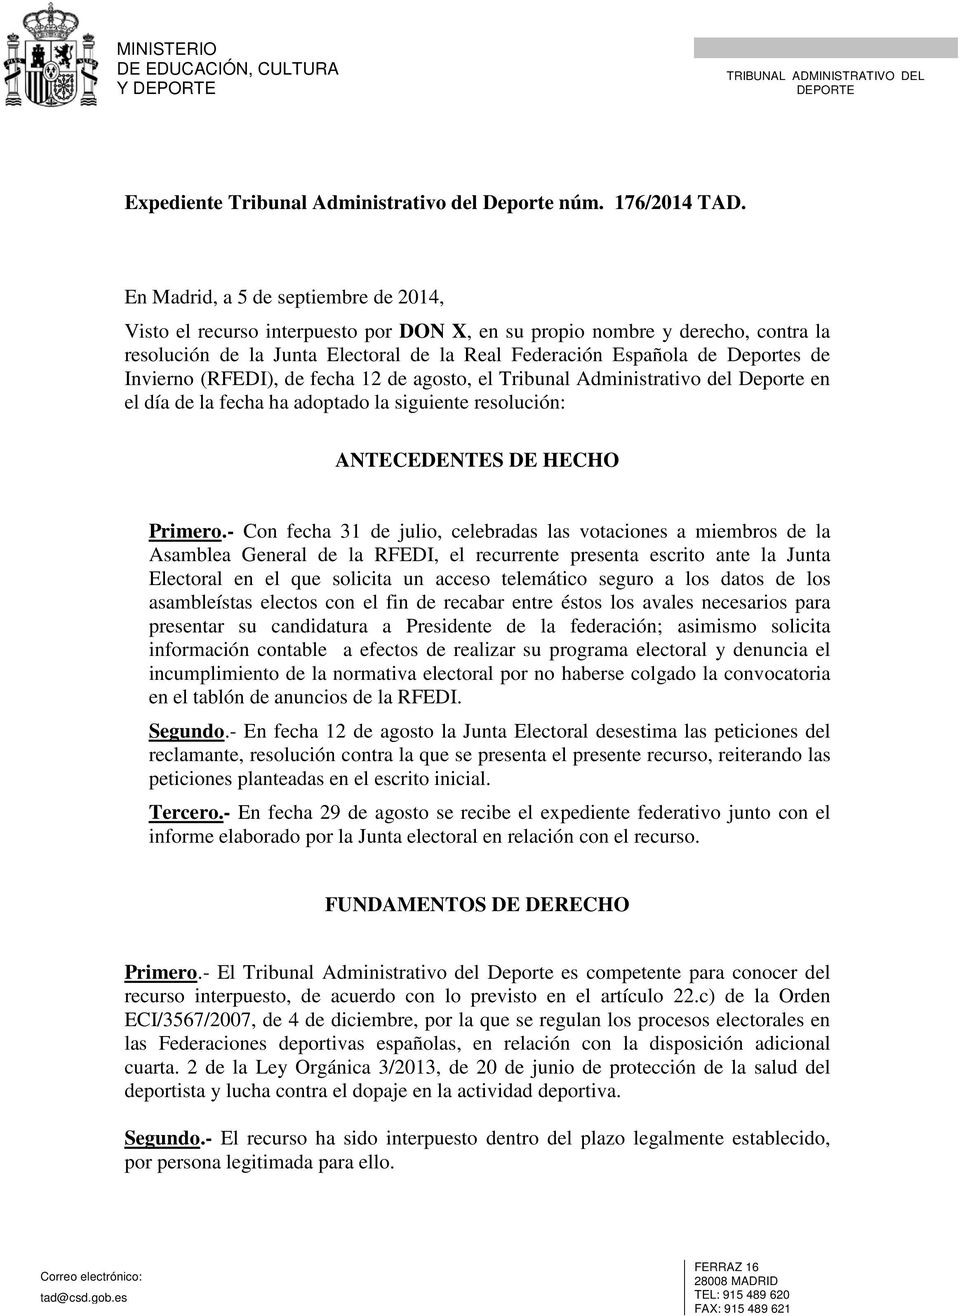 Invierno (RFEDI), de fecha 12 de agosto, el Tribunal Administrativo del Deporte en el día de la fecha ha adoptado la siguiente resolución: ANTECEDENTES DE HECHO Primero.